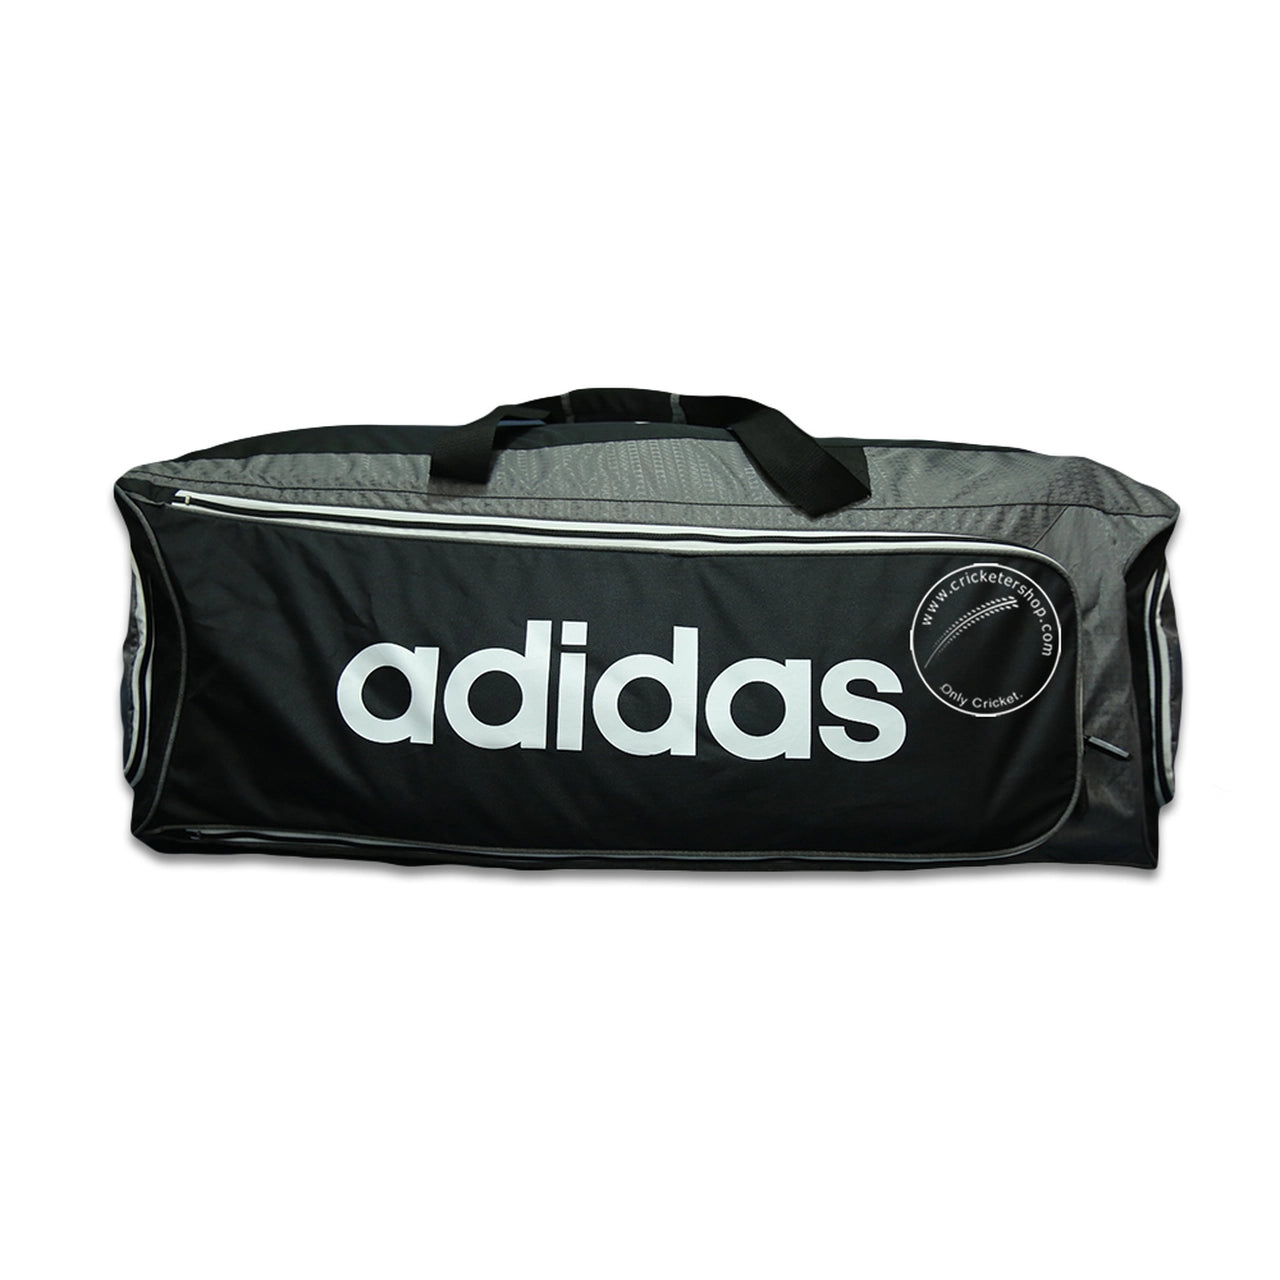 Adidas Kit Bag XT 2.0